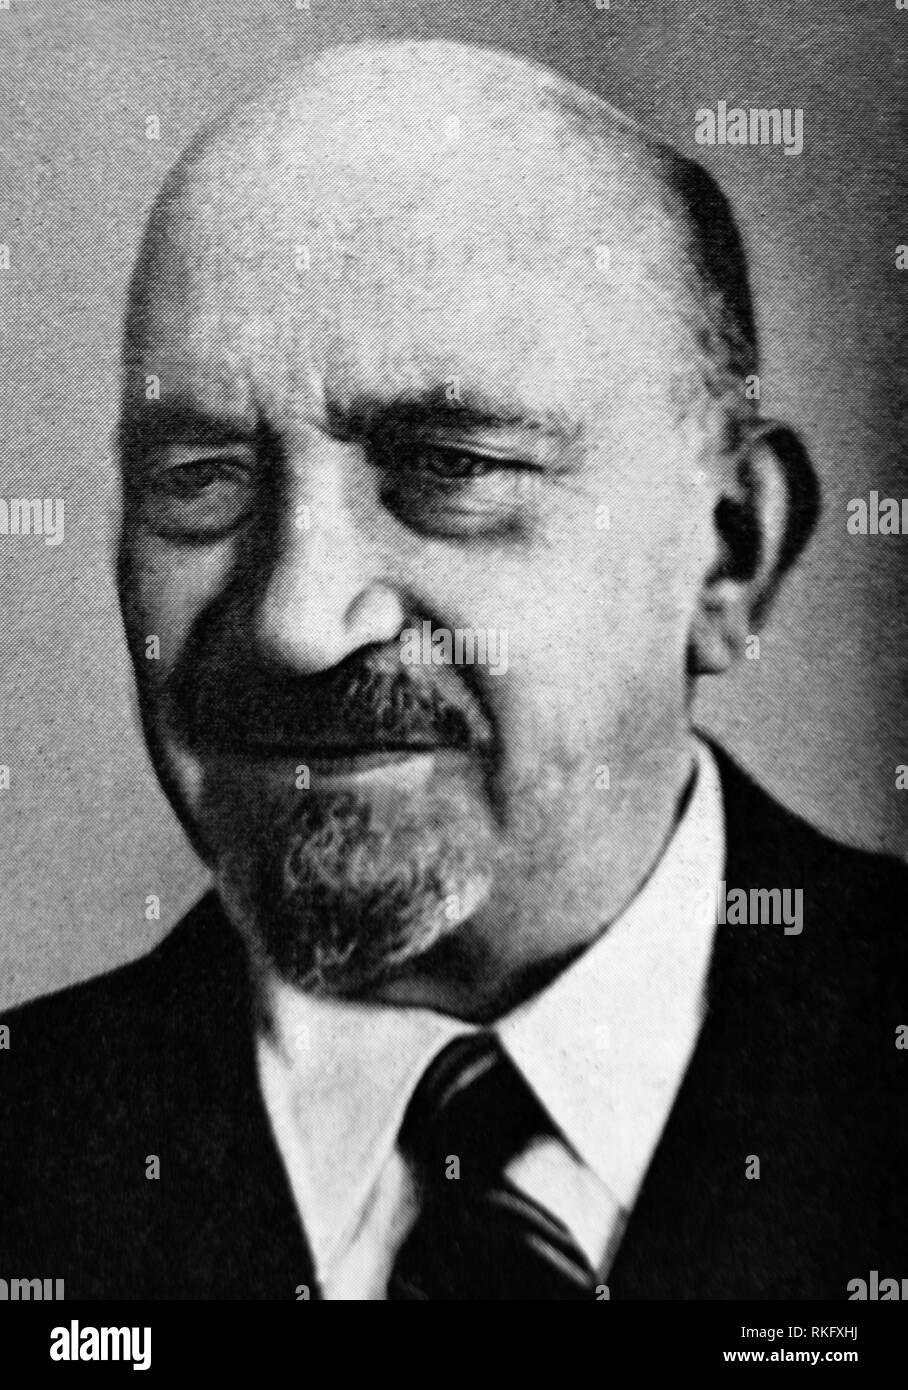 Chaim Weizmann. Chaim Azriel Weizmann (27. November 1874 - 9. November 1952) war ein zionistischer Führer und israelischen Staatsmann, als Präsident der serviert. Stockfoto